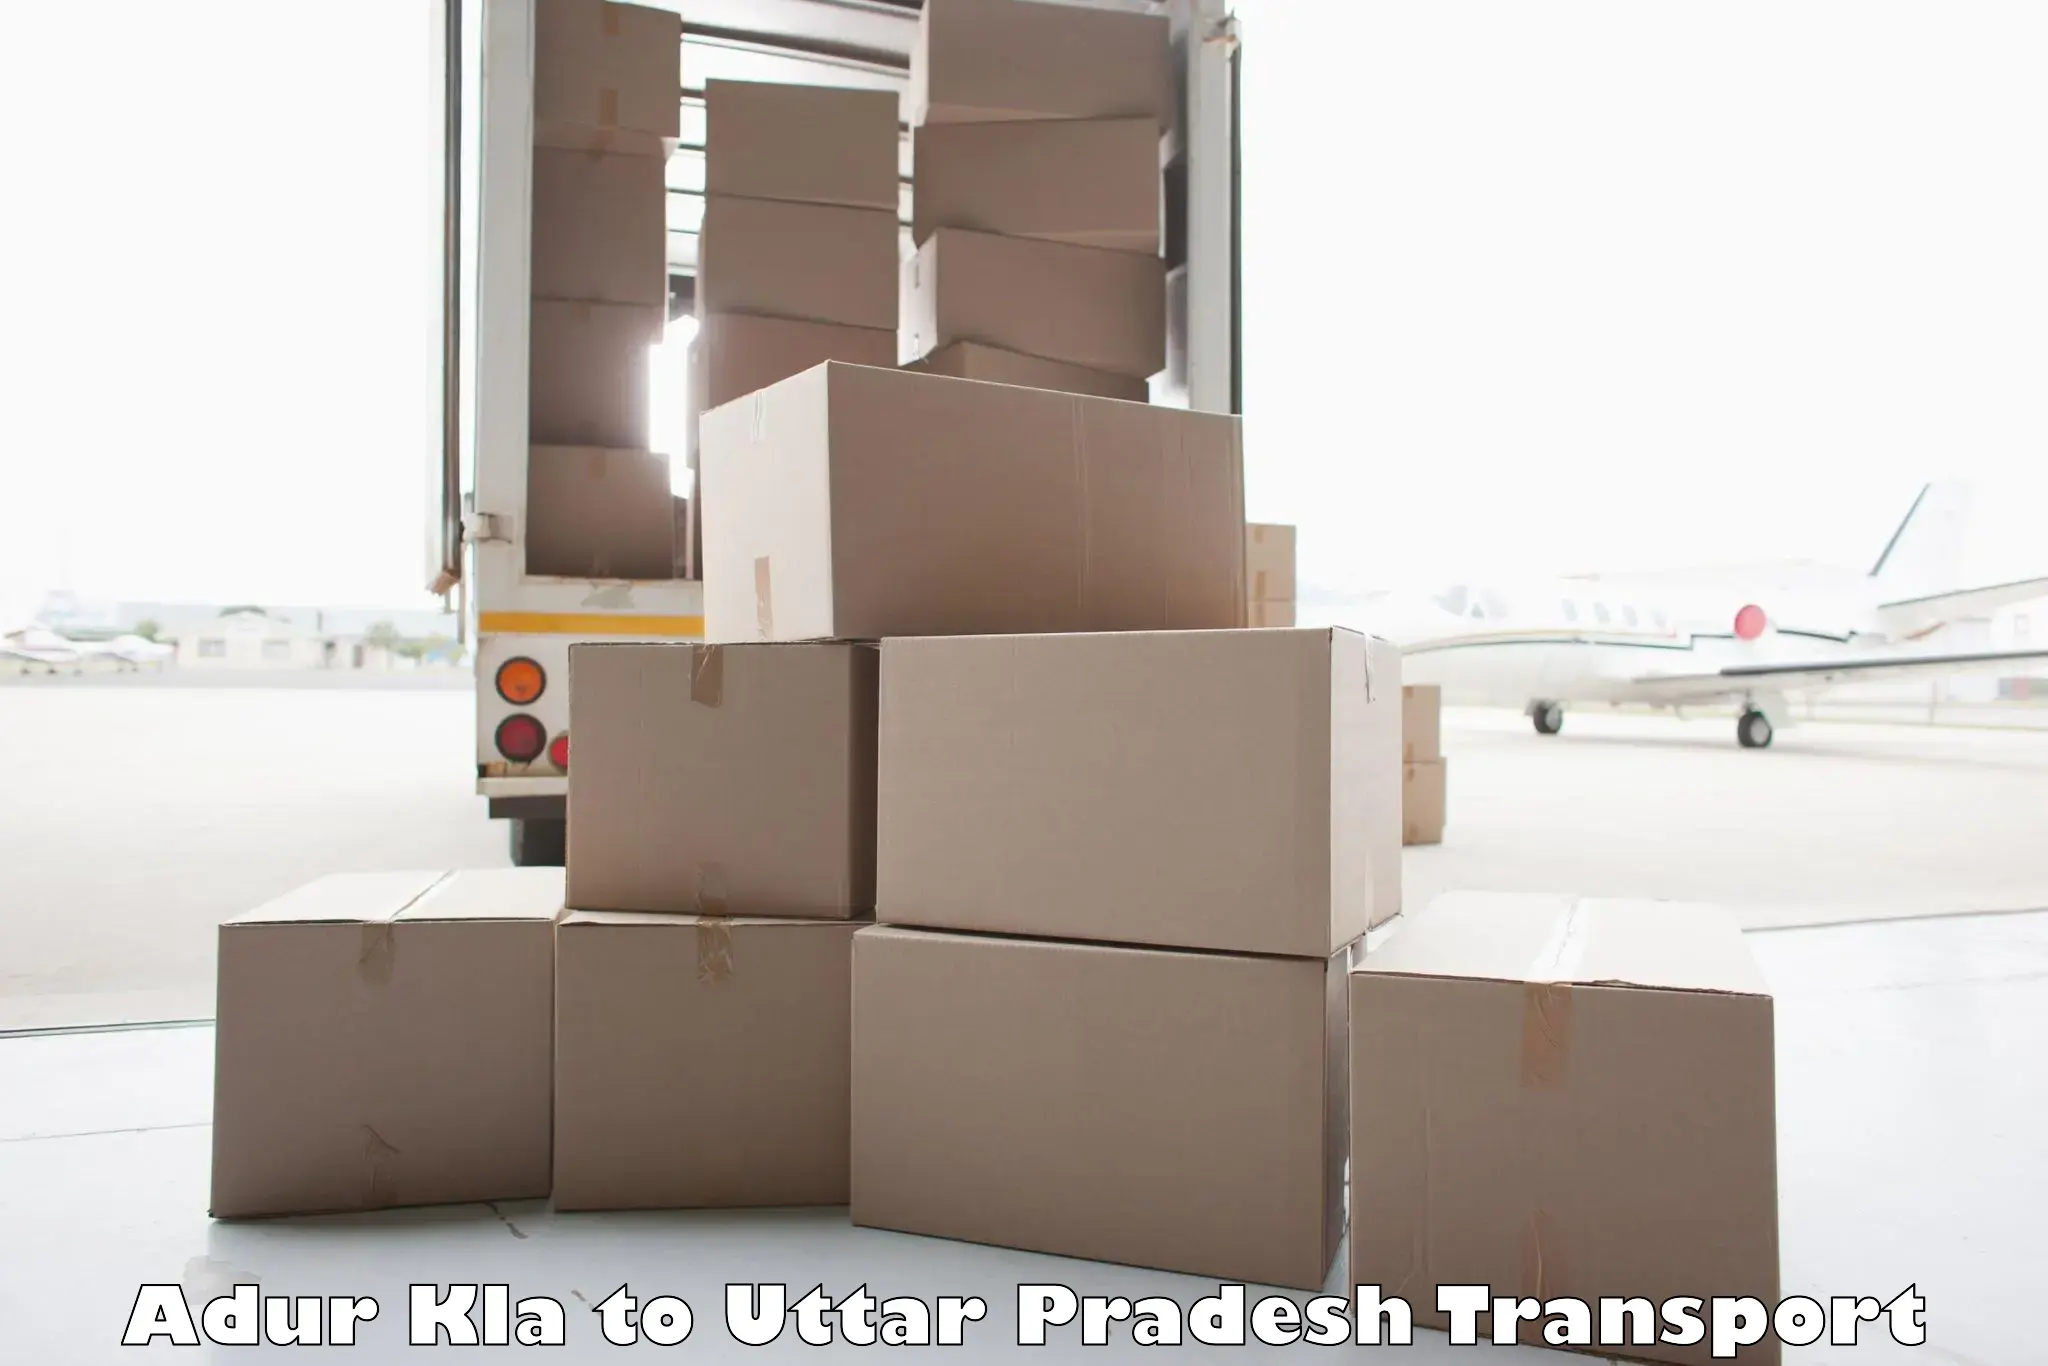 Vehicle parcel service Adur Kla to Bakewar